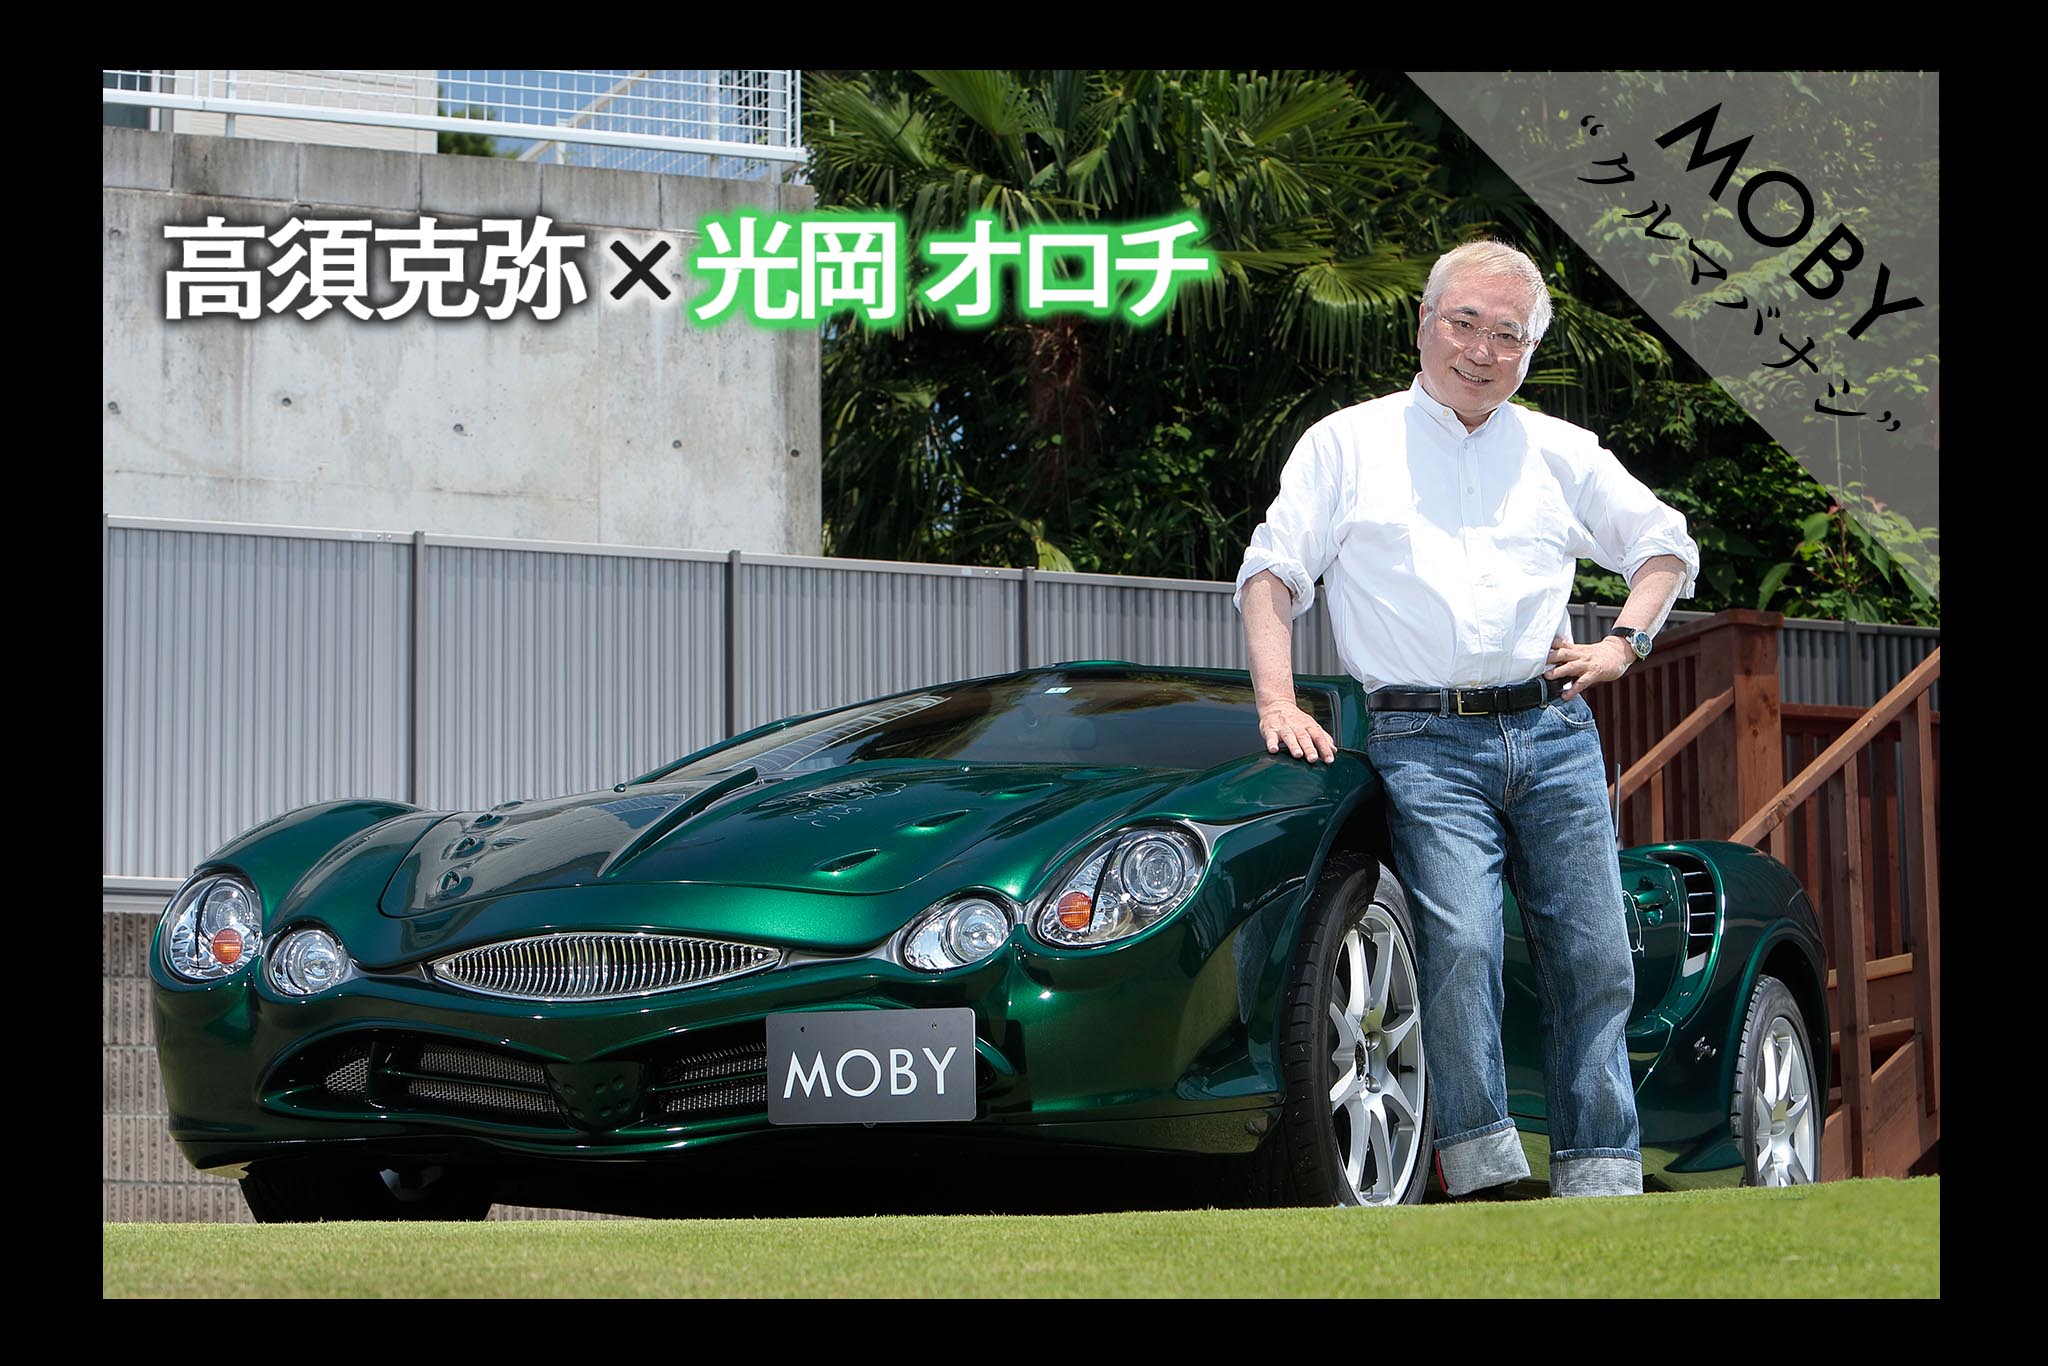 高須克弥 光岡 オロチ Vol 1 一目惚れした車は即購入 Mobyクルマバナシ Moby モビー